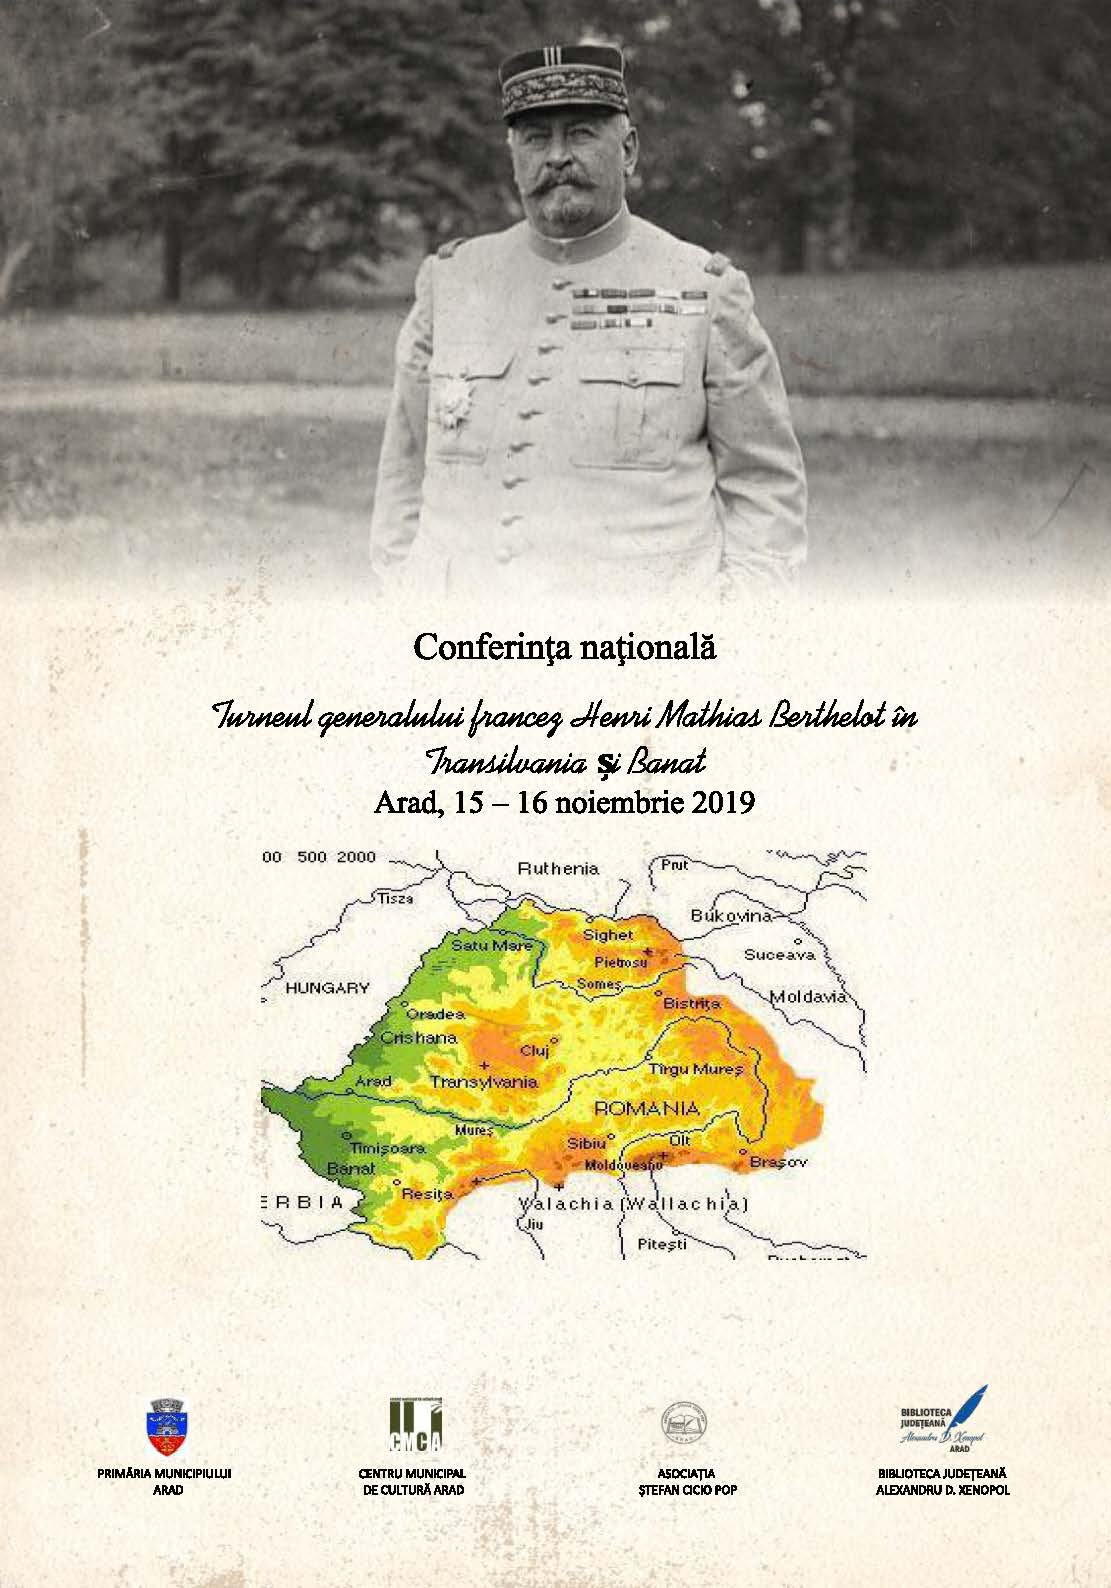 Conferința științifică națională „Turneul generalului Berthelot în Transilvania și Banat la sfârșitul anului 1918 și începutul anului 1919“, la Arad